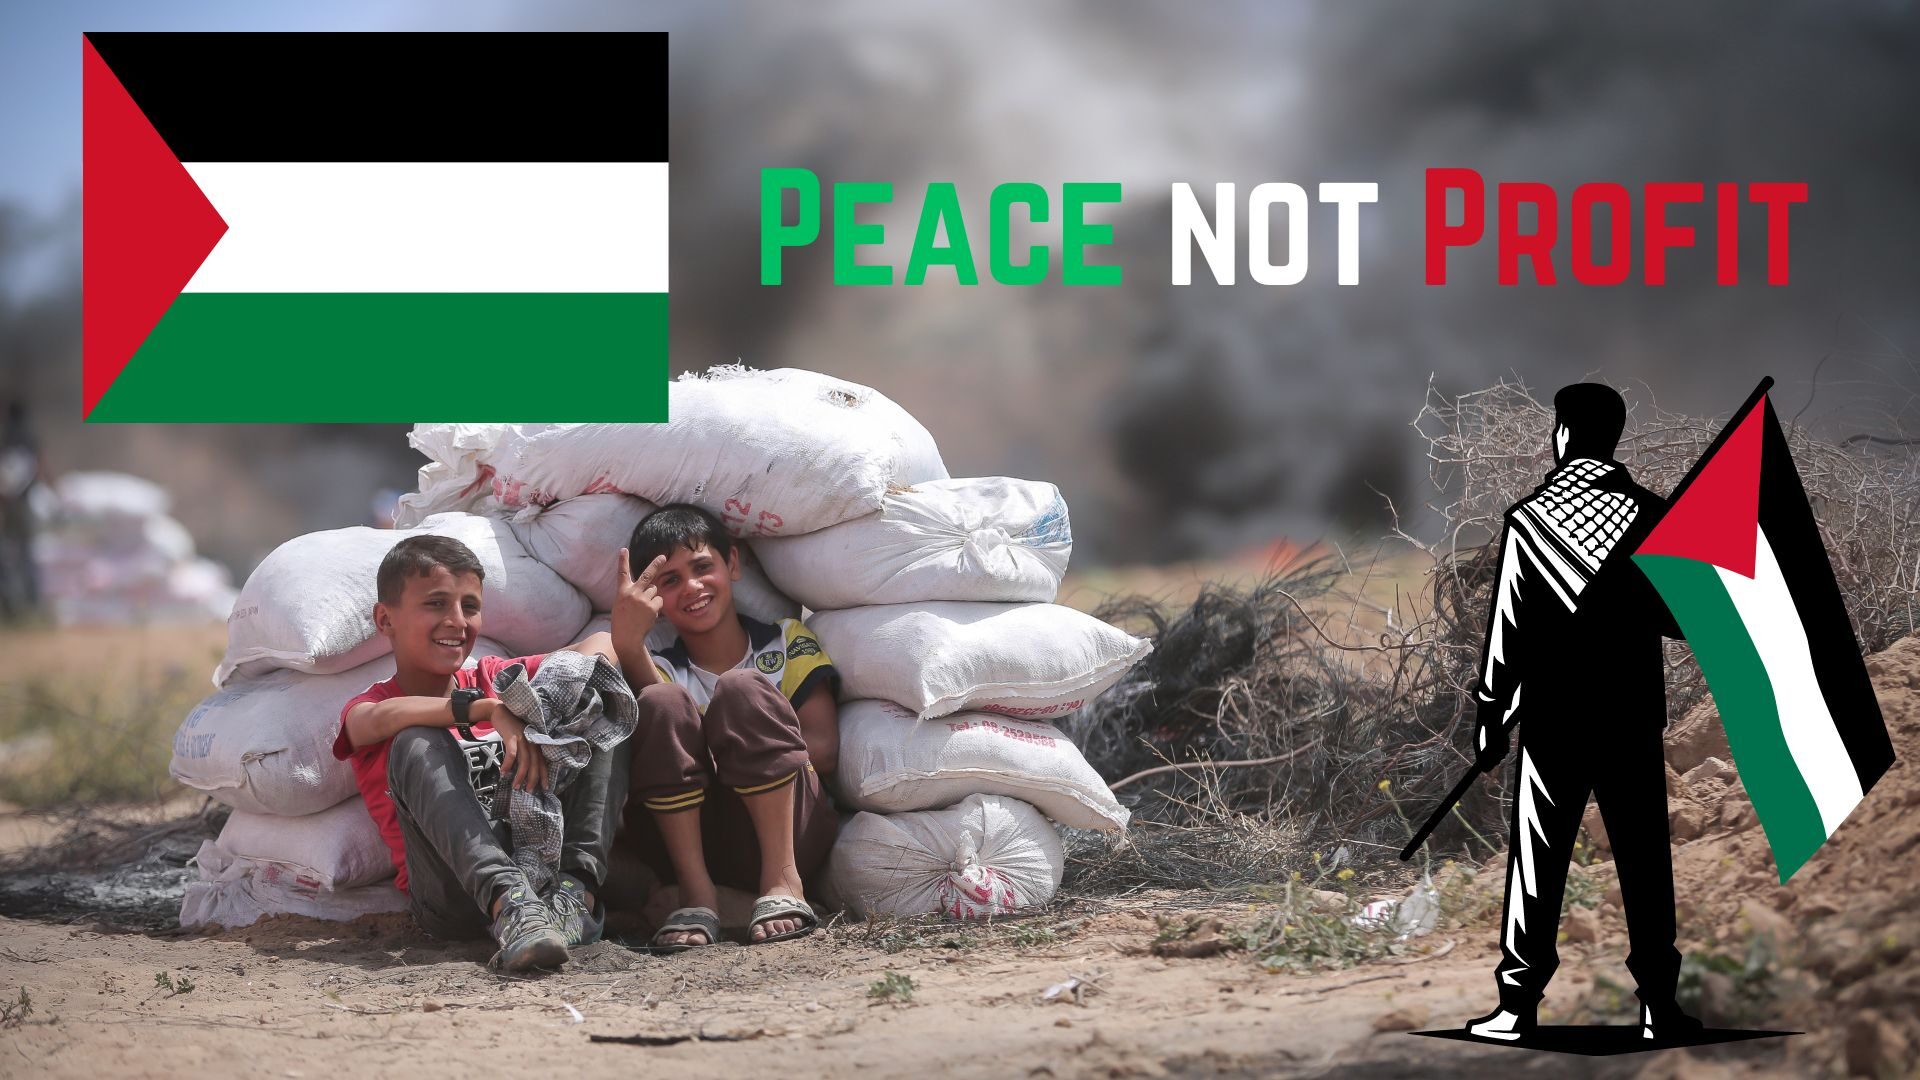 Peace not Profit